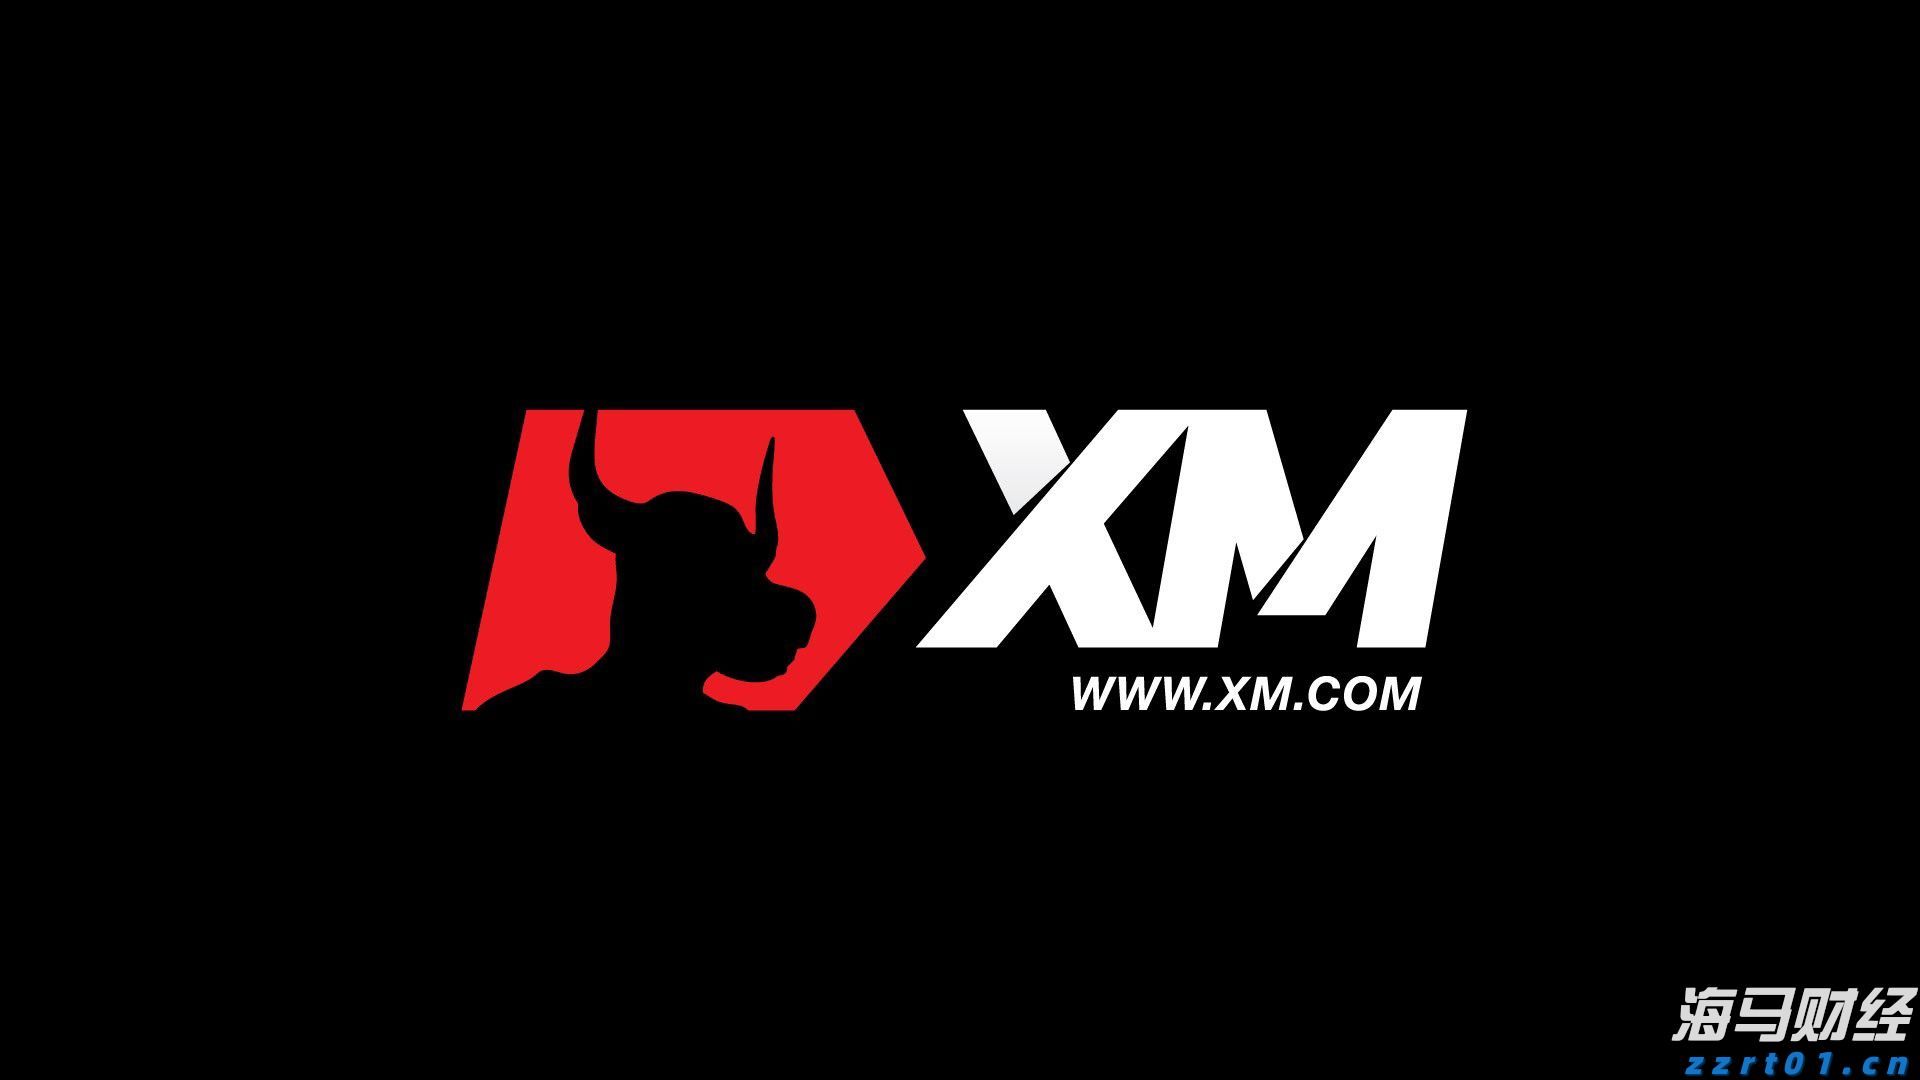 XM平台返佣模式是什么样的?